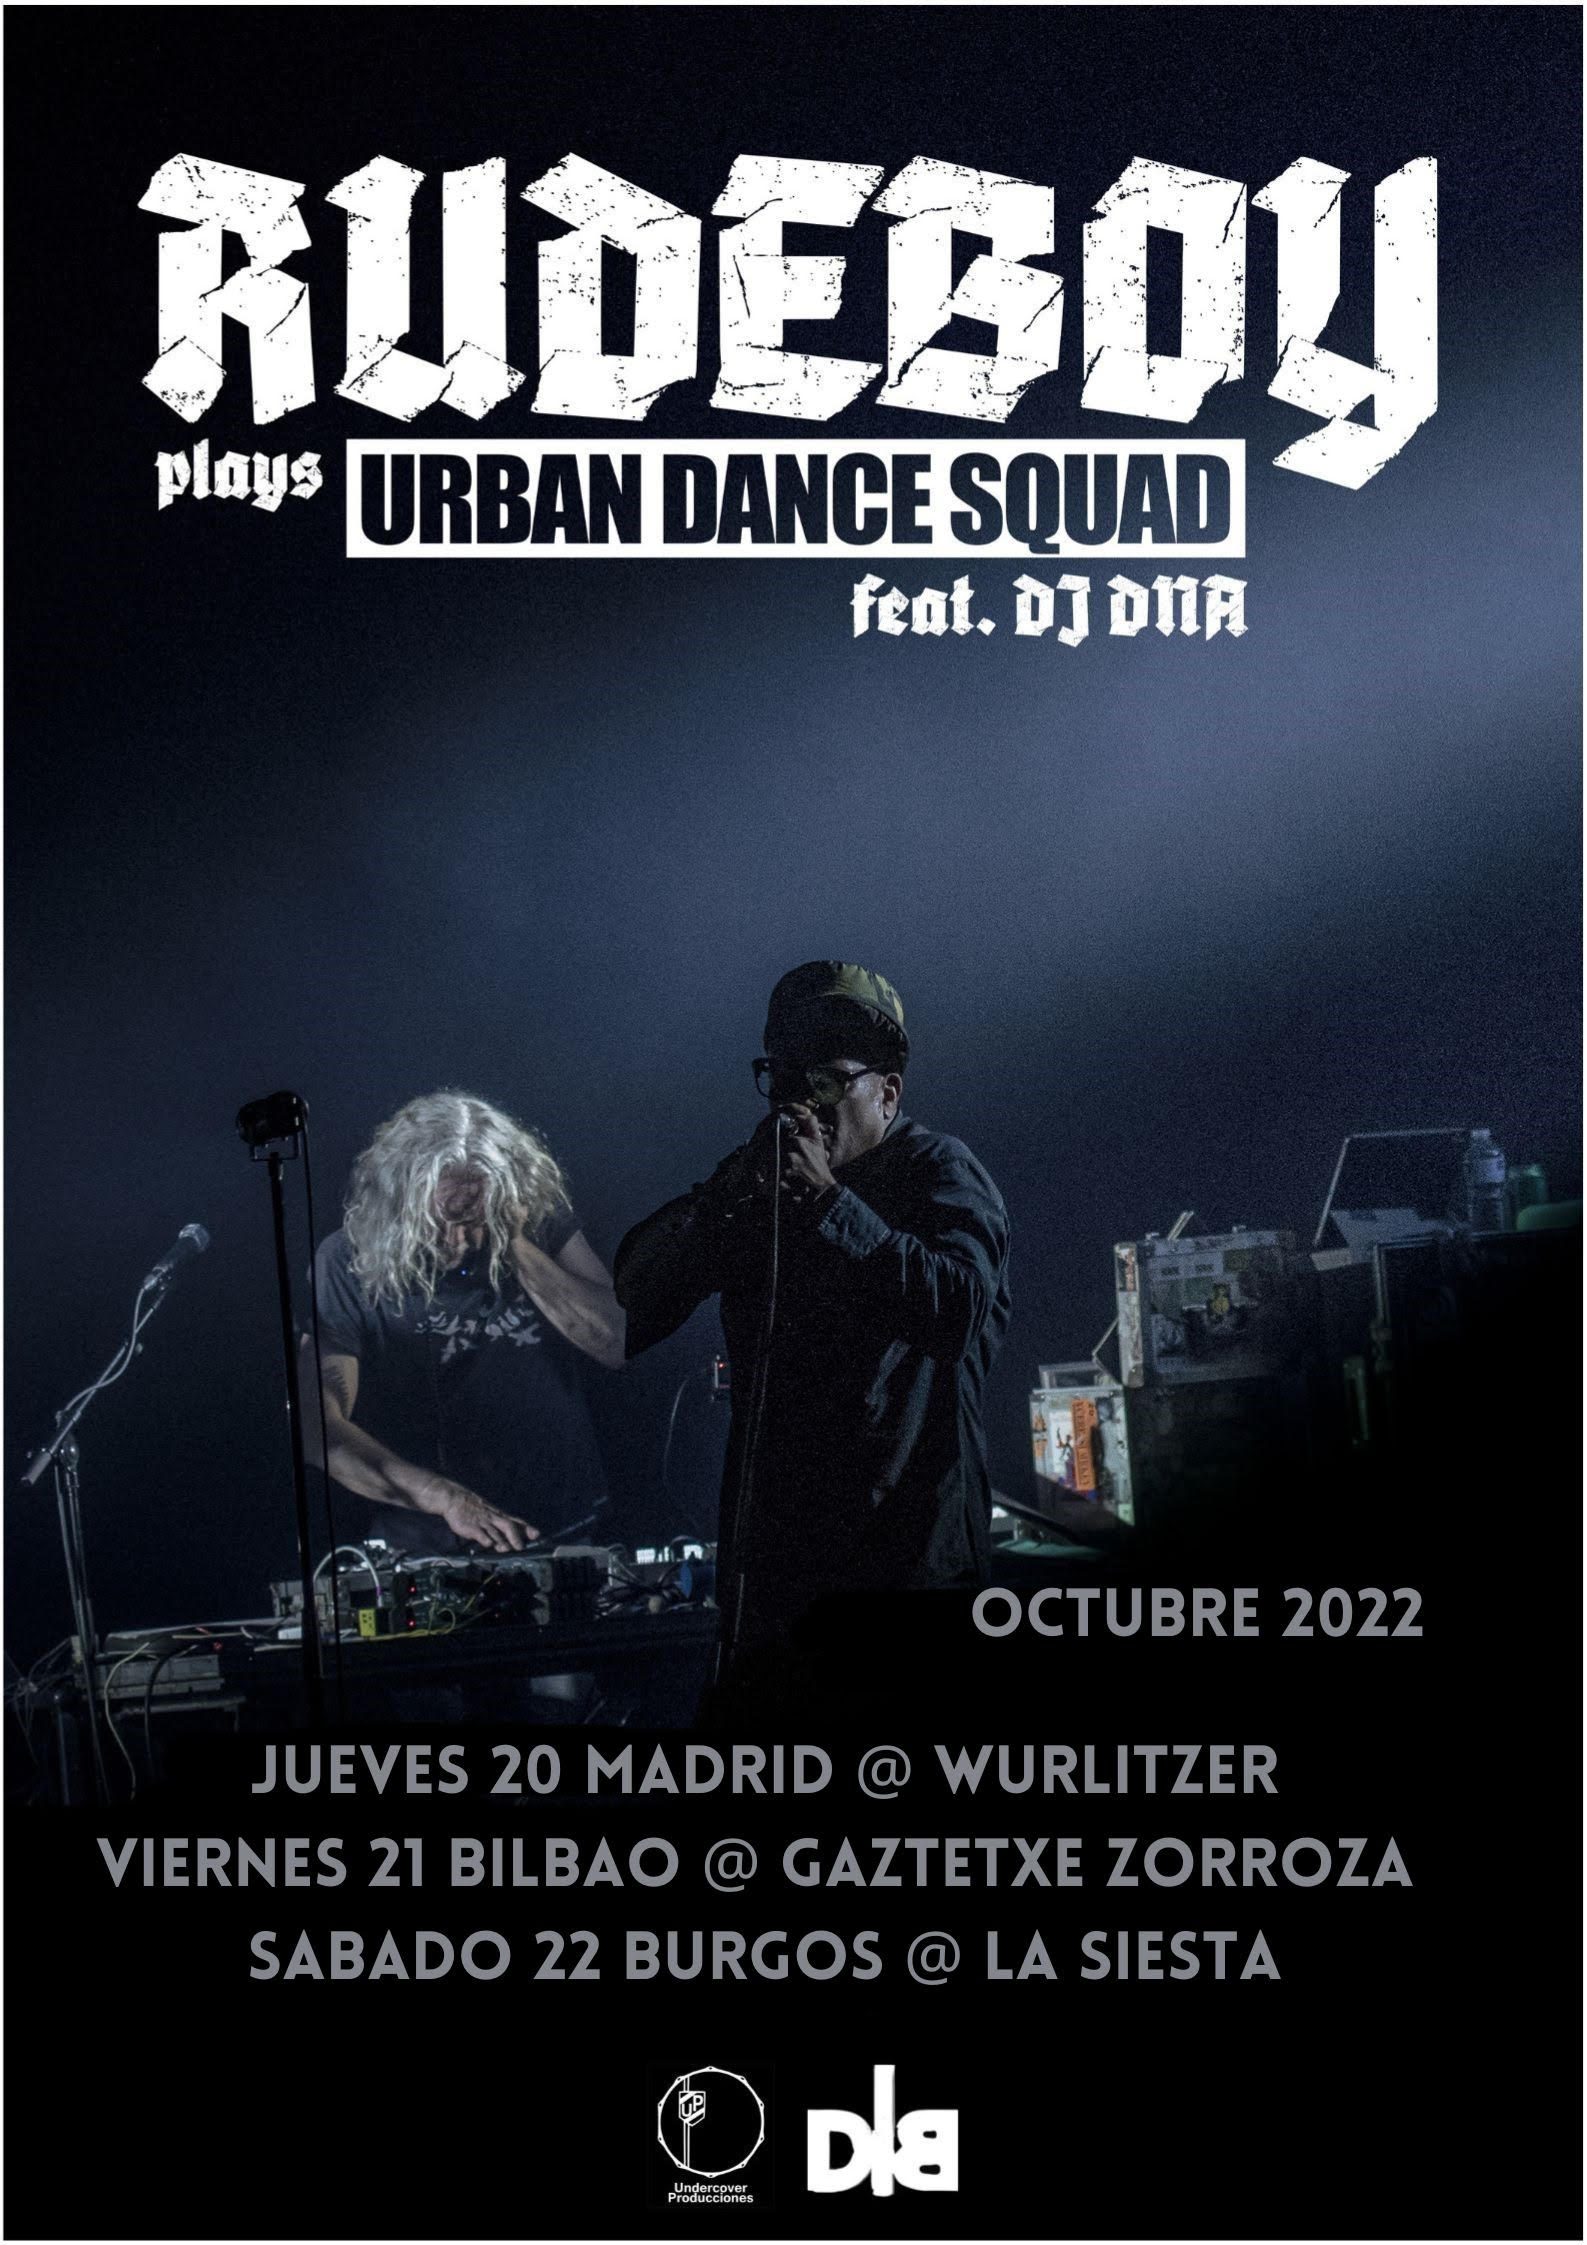 RUDEBOY plays URBAN DANCE SQUAD feat. DJ DNA OCTUBRE 2022 Madrid, Bilbao y Burgos